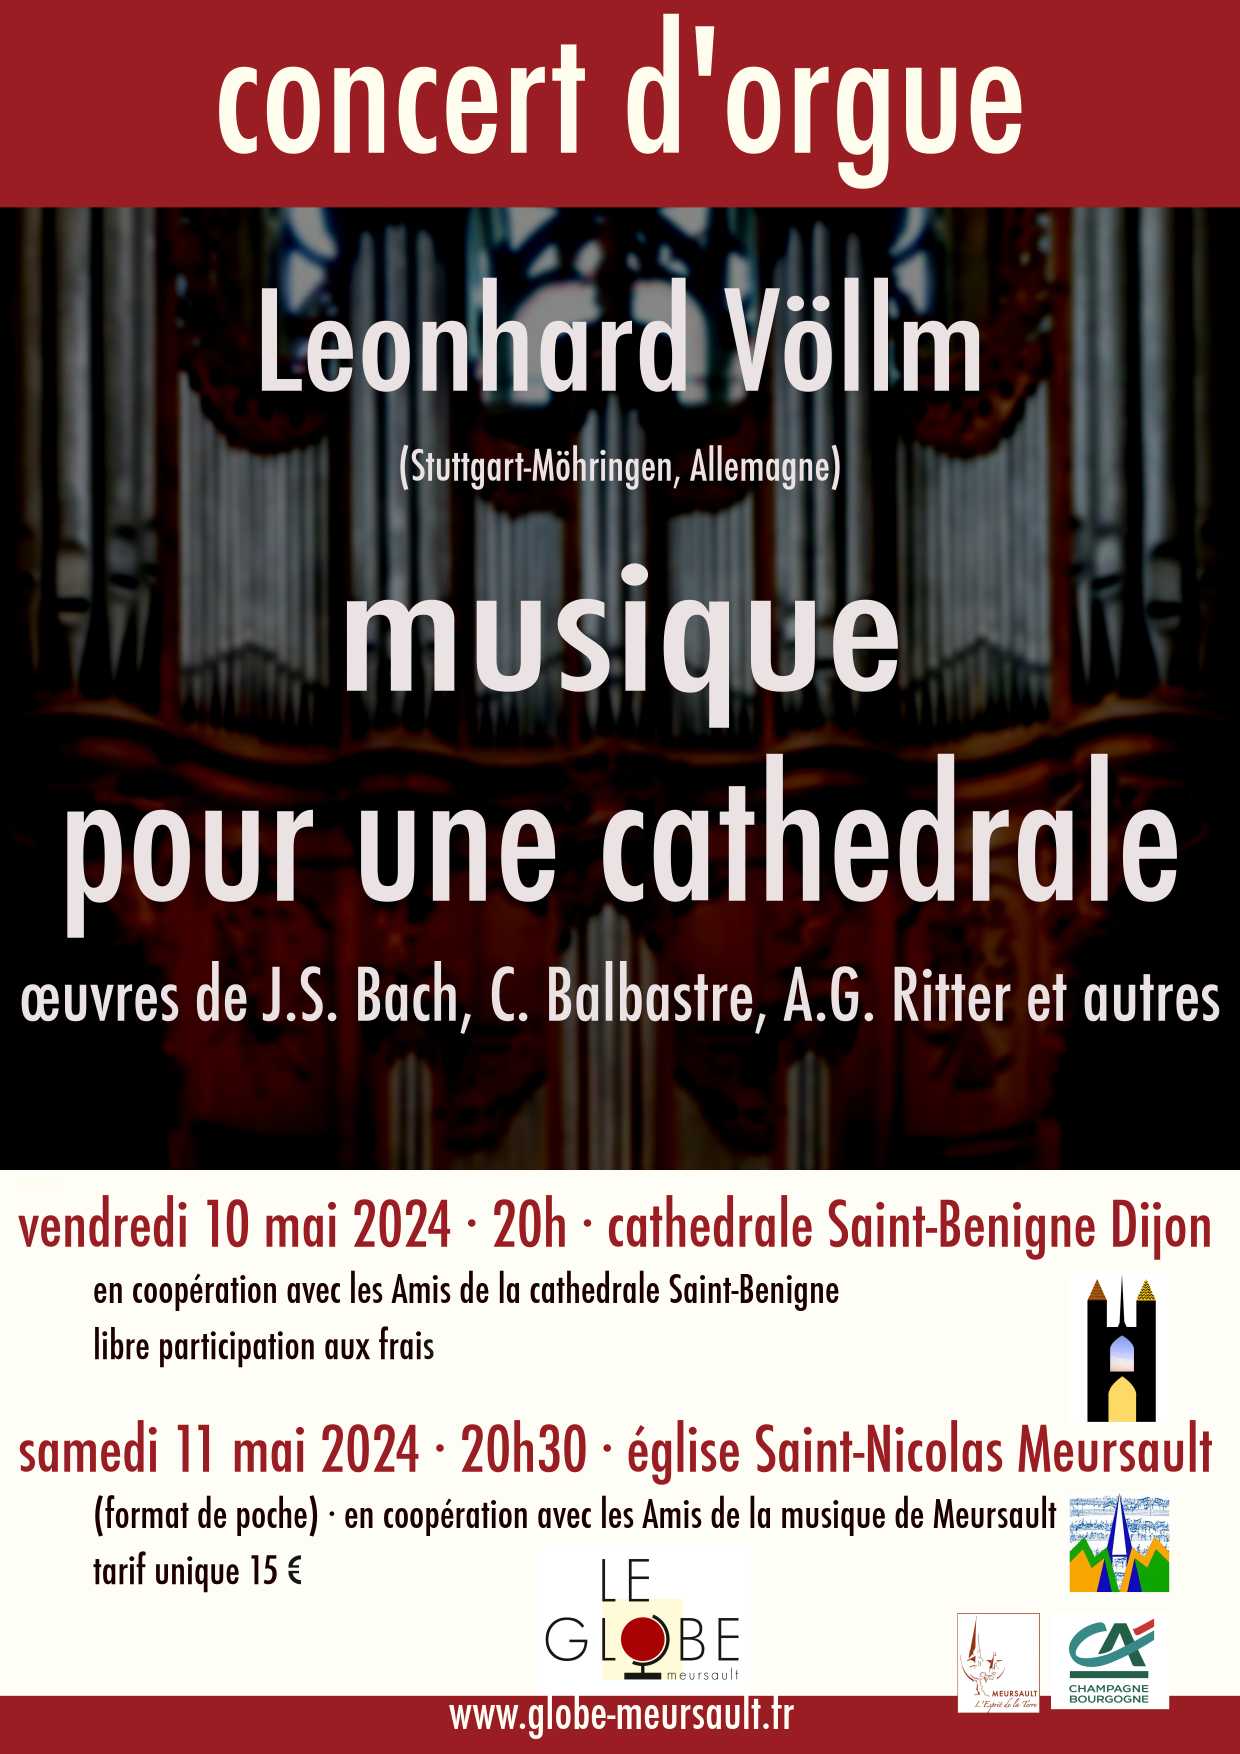 Concert d'Orgue Musique pour une cathédrale